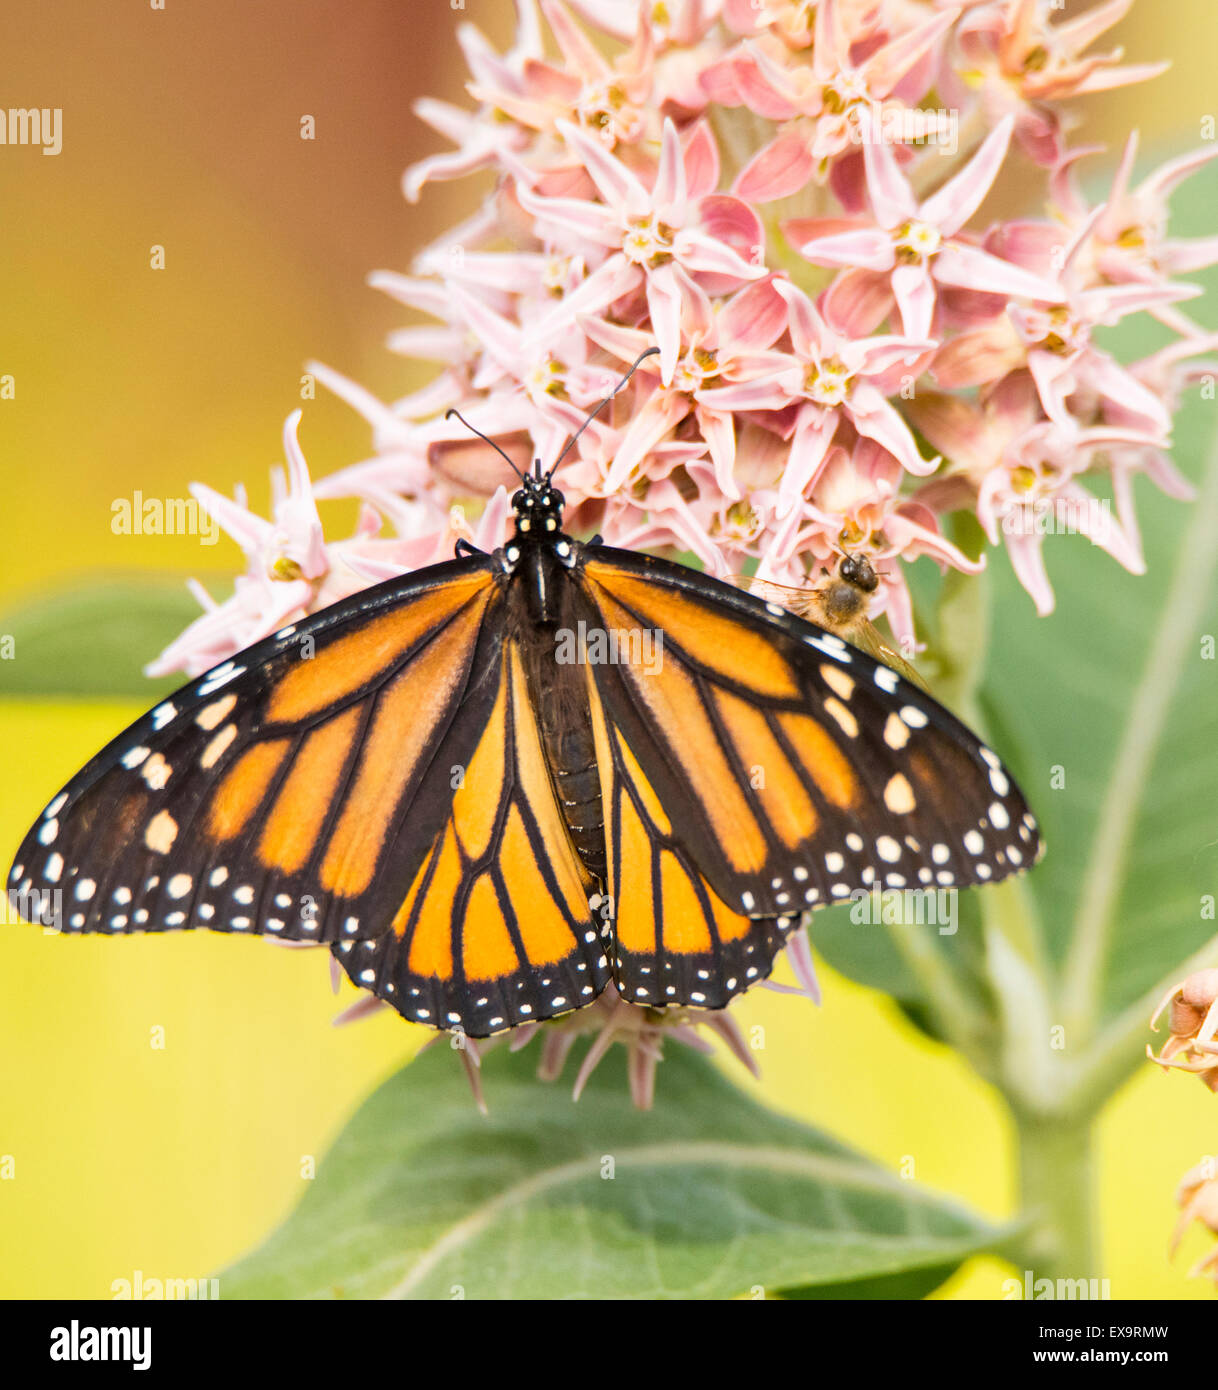 Les papillons, Papillon monarque mâle en sirotant necteur de l'Asclépiade commune Plante en fleurs. New York, USA, Amérique du Nord Banque D'Images